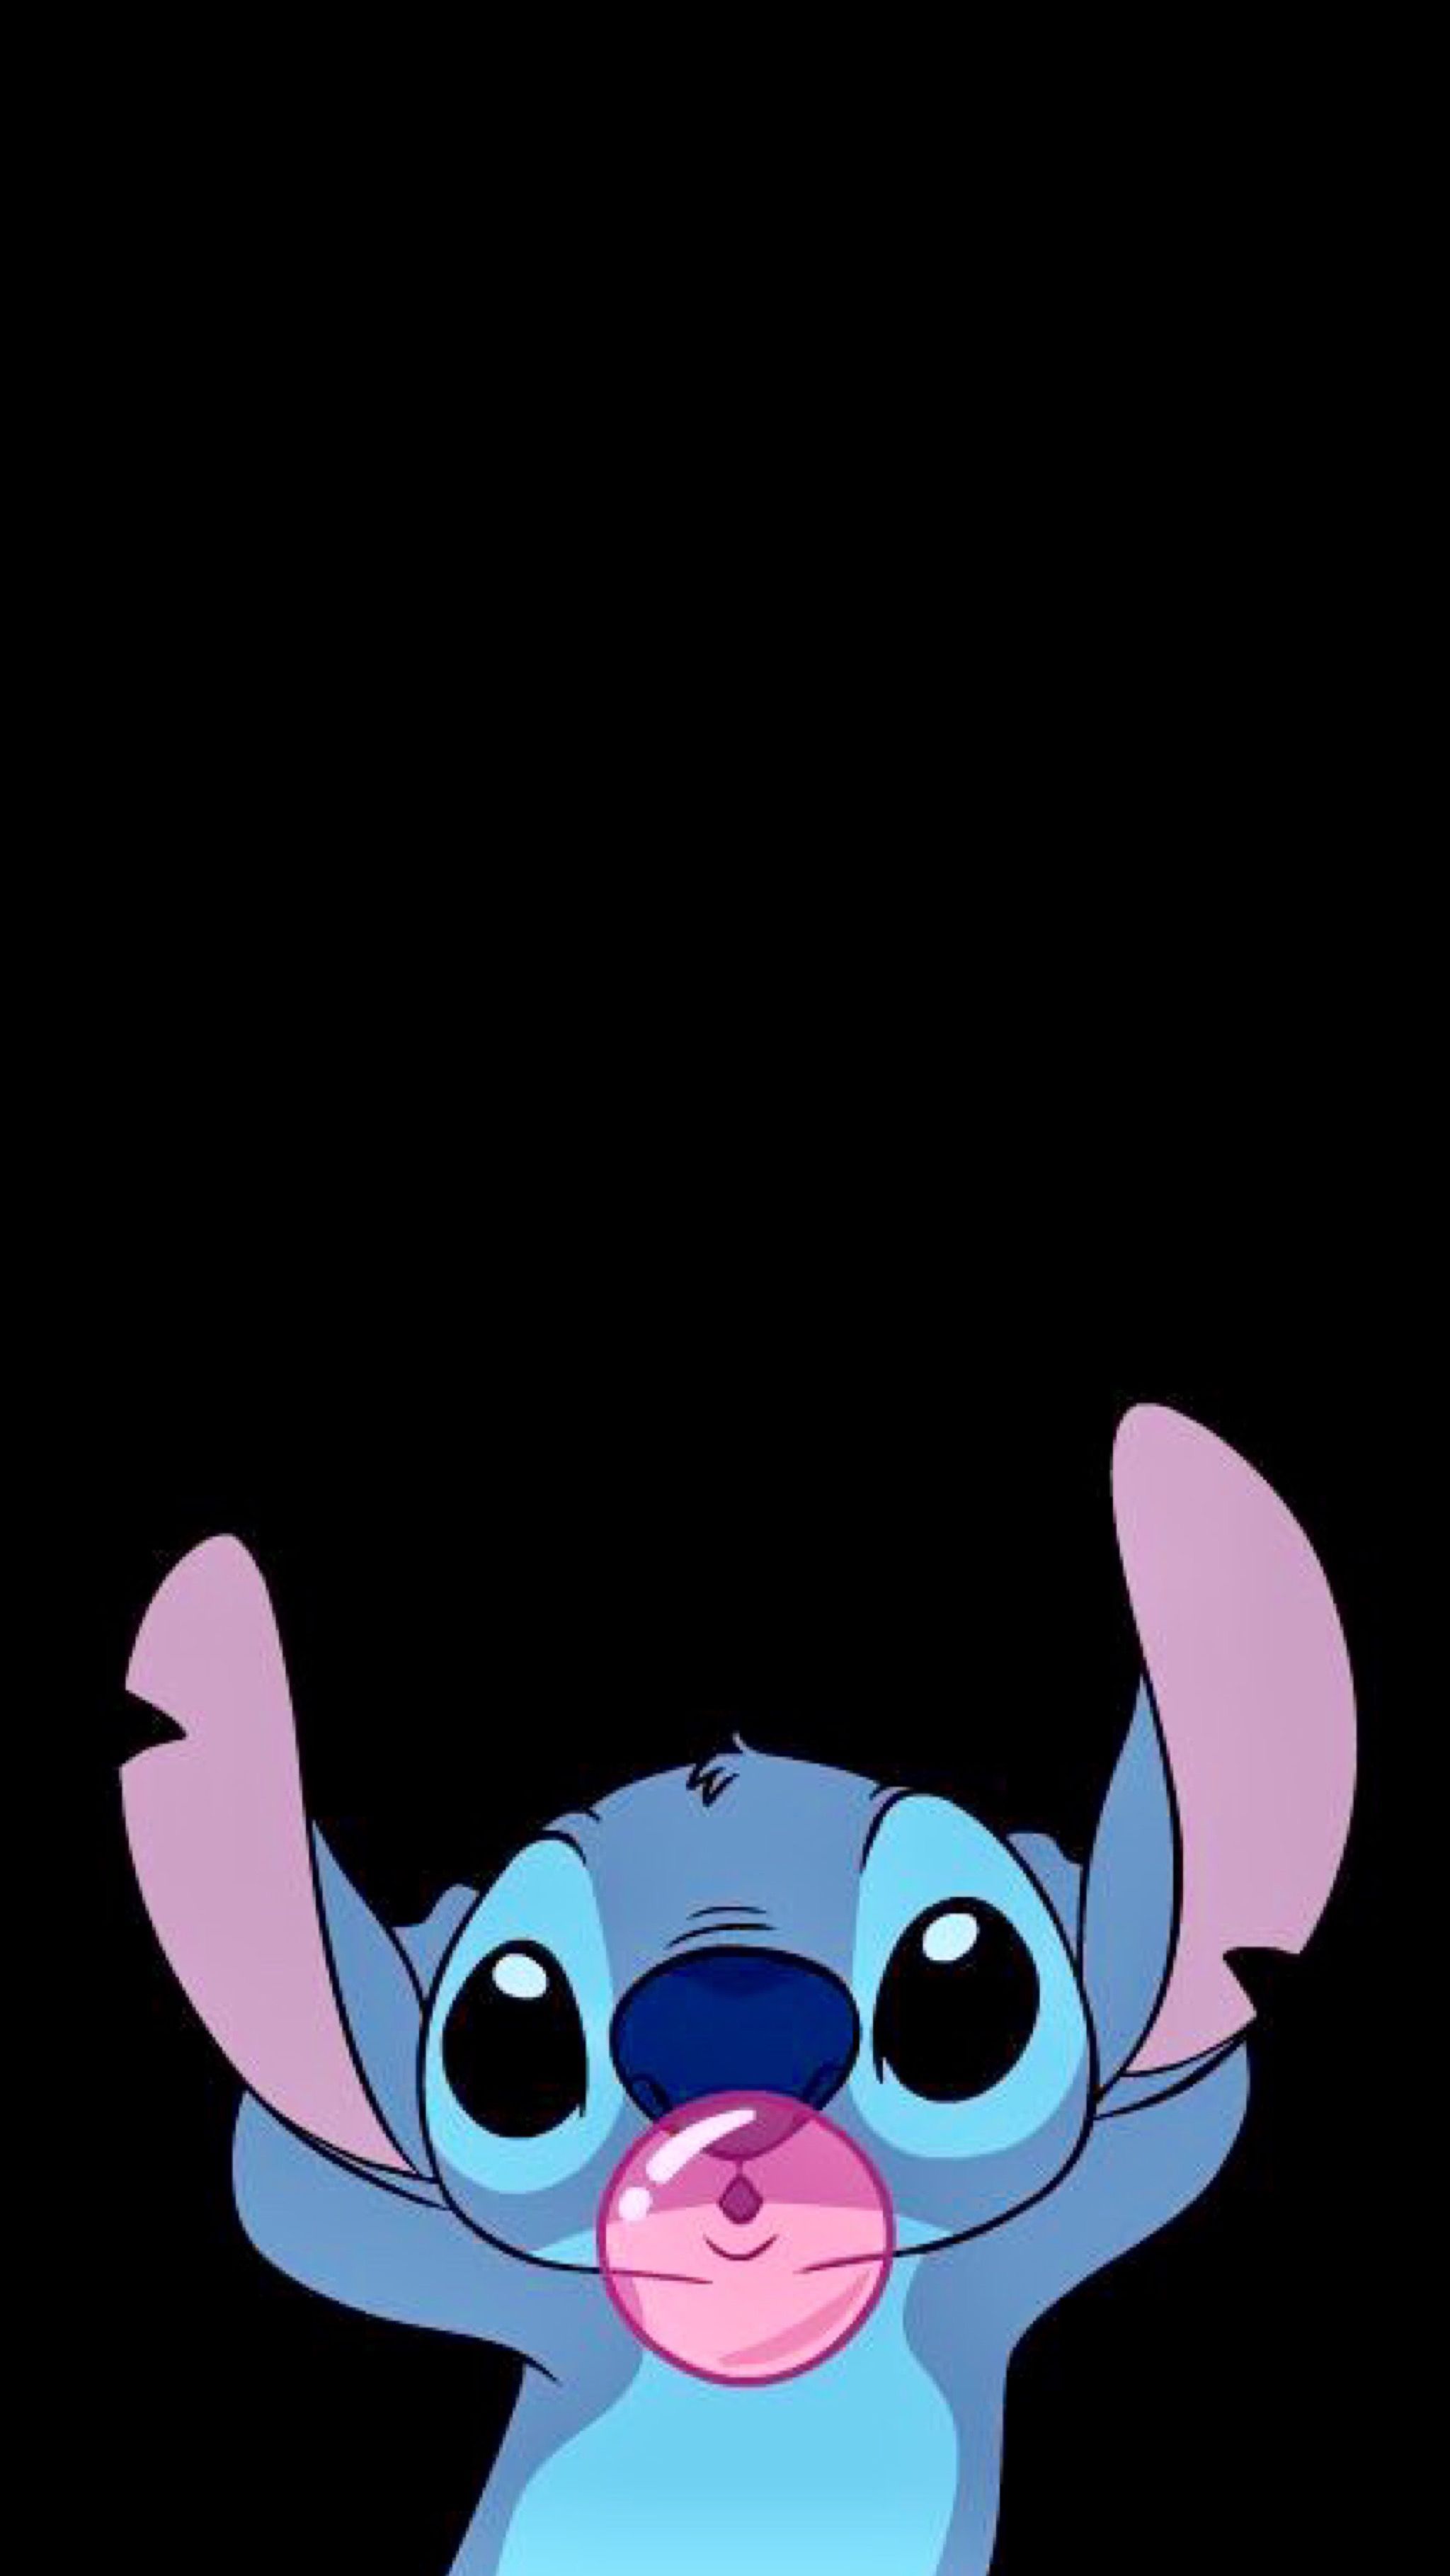 Disney <3 Lilo and Stitch  Wallpapers bonitos, Lilo & stich